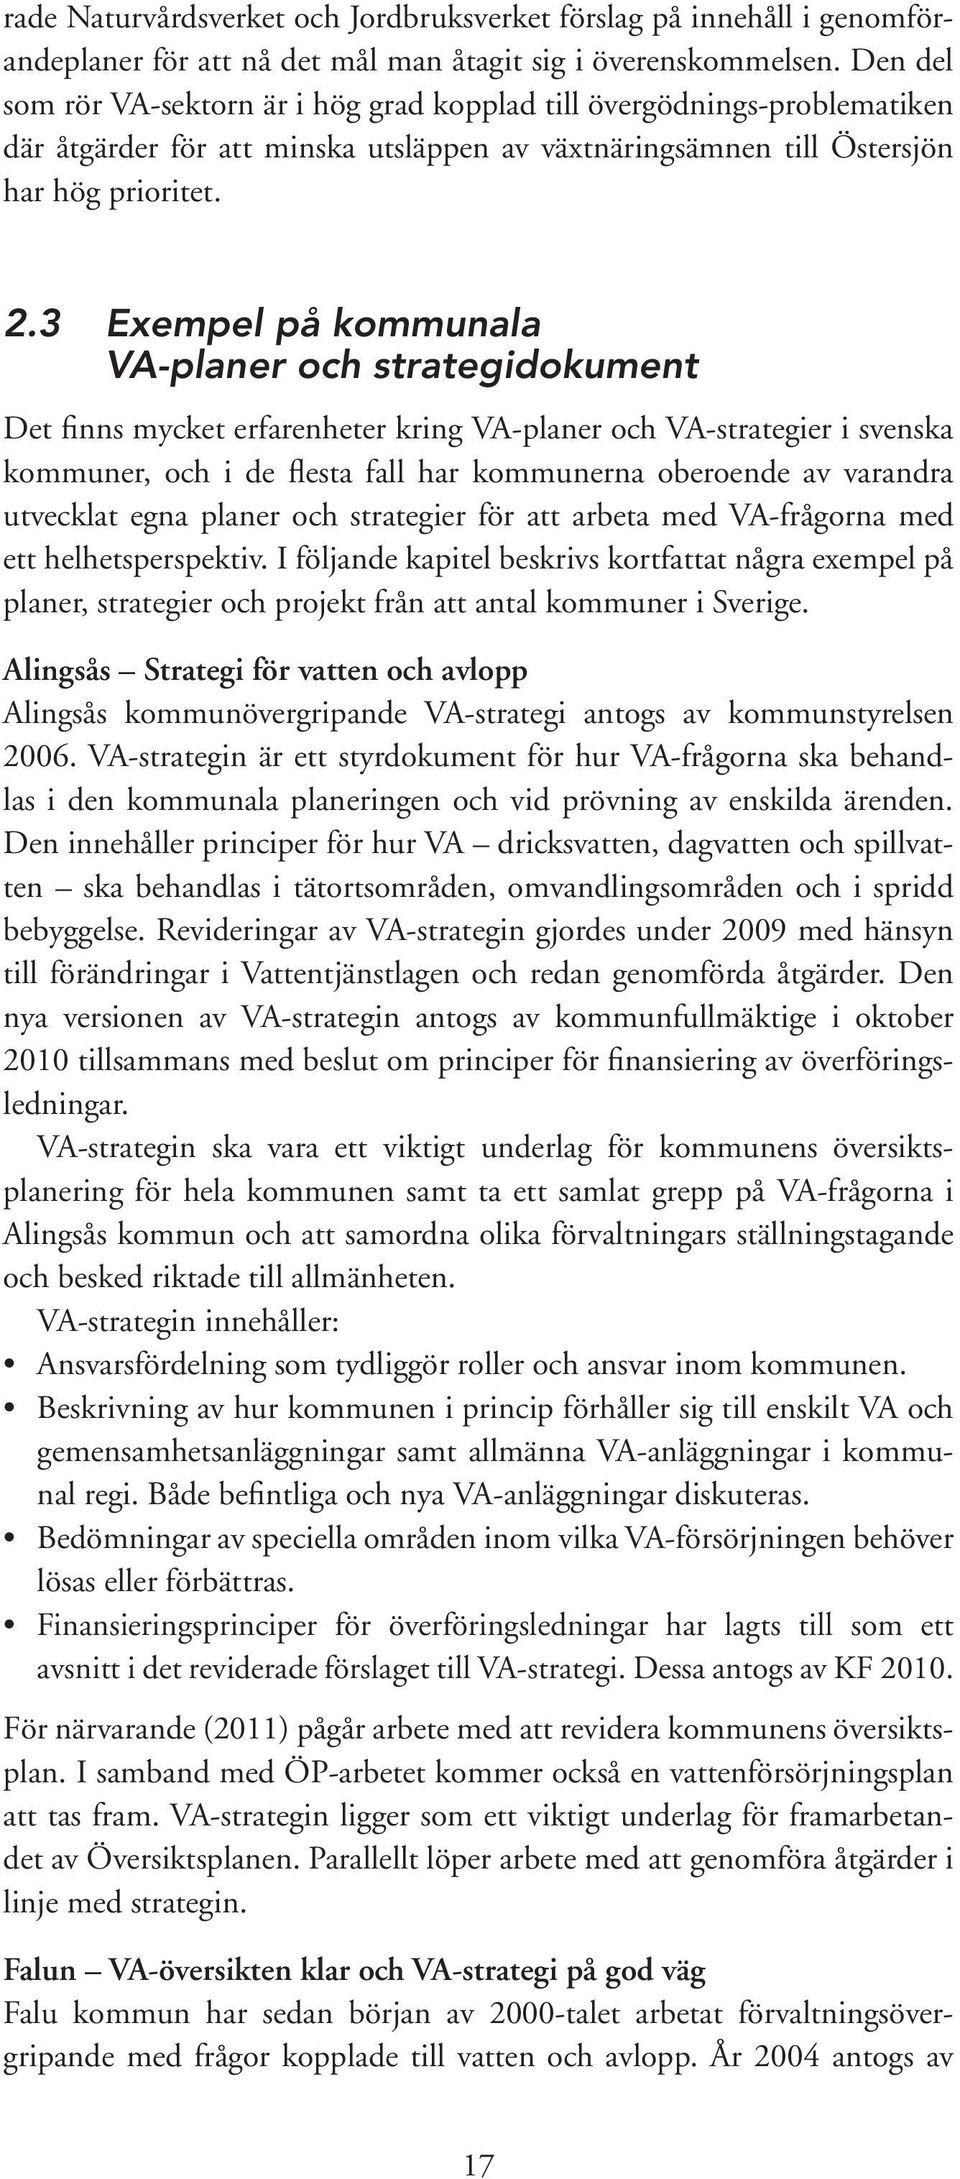 3 Exempel på kommunala VA-planer och strategidokument Det finns mycket erfarenheter kring VA-planer och VA-strategier i svenska kommuner, och i de flesta fall har kommunerna oberoende av varandra